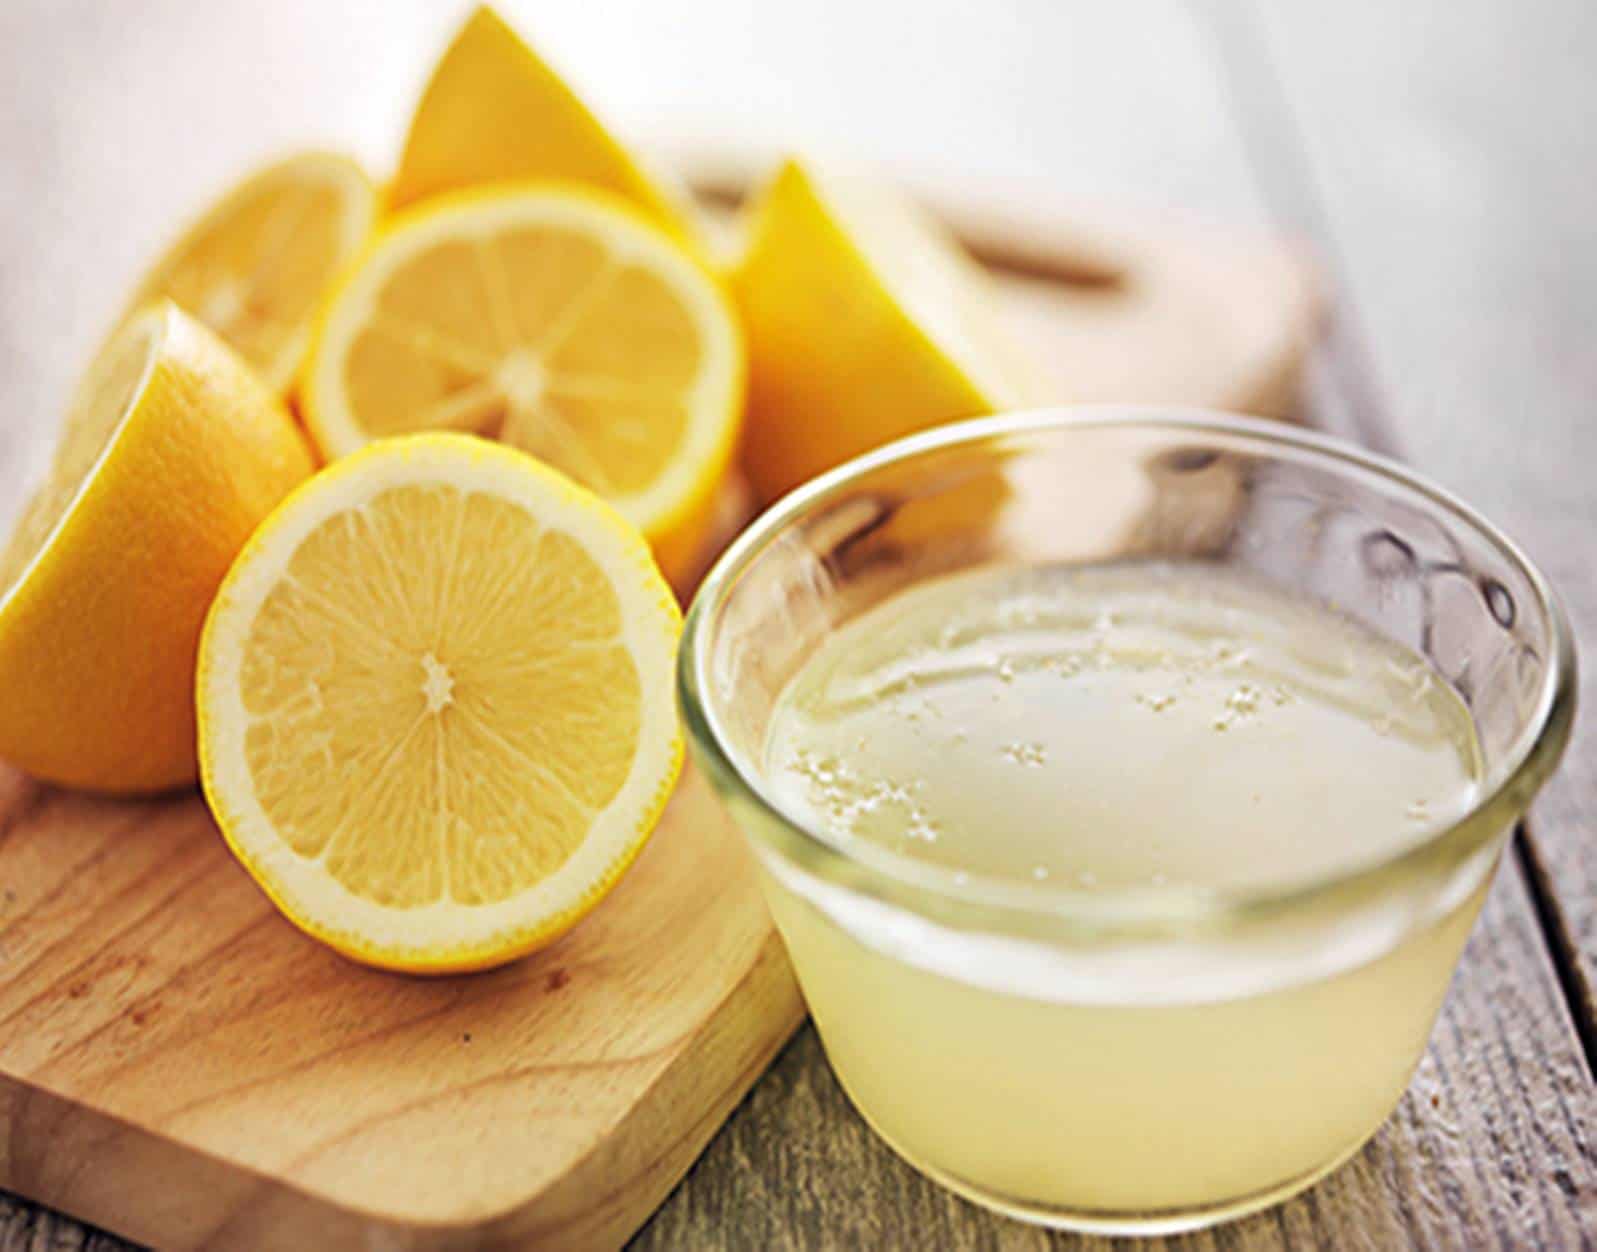 Usar Limão corretamente ajuda a emagrecer e tirar o inchaço: veja 5 receitas